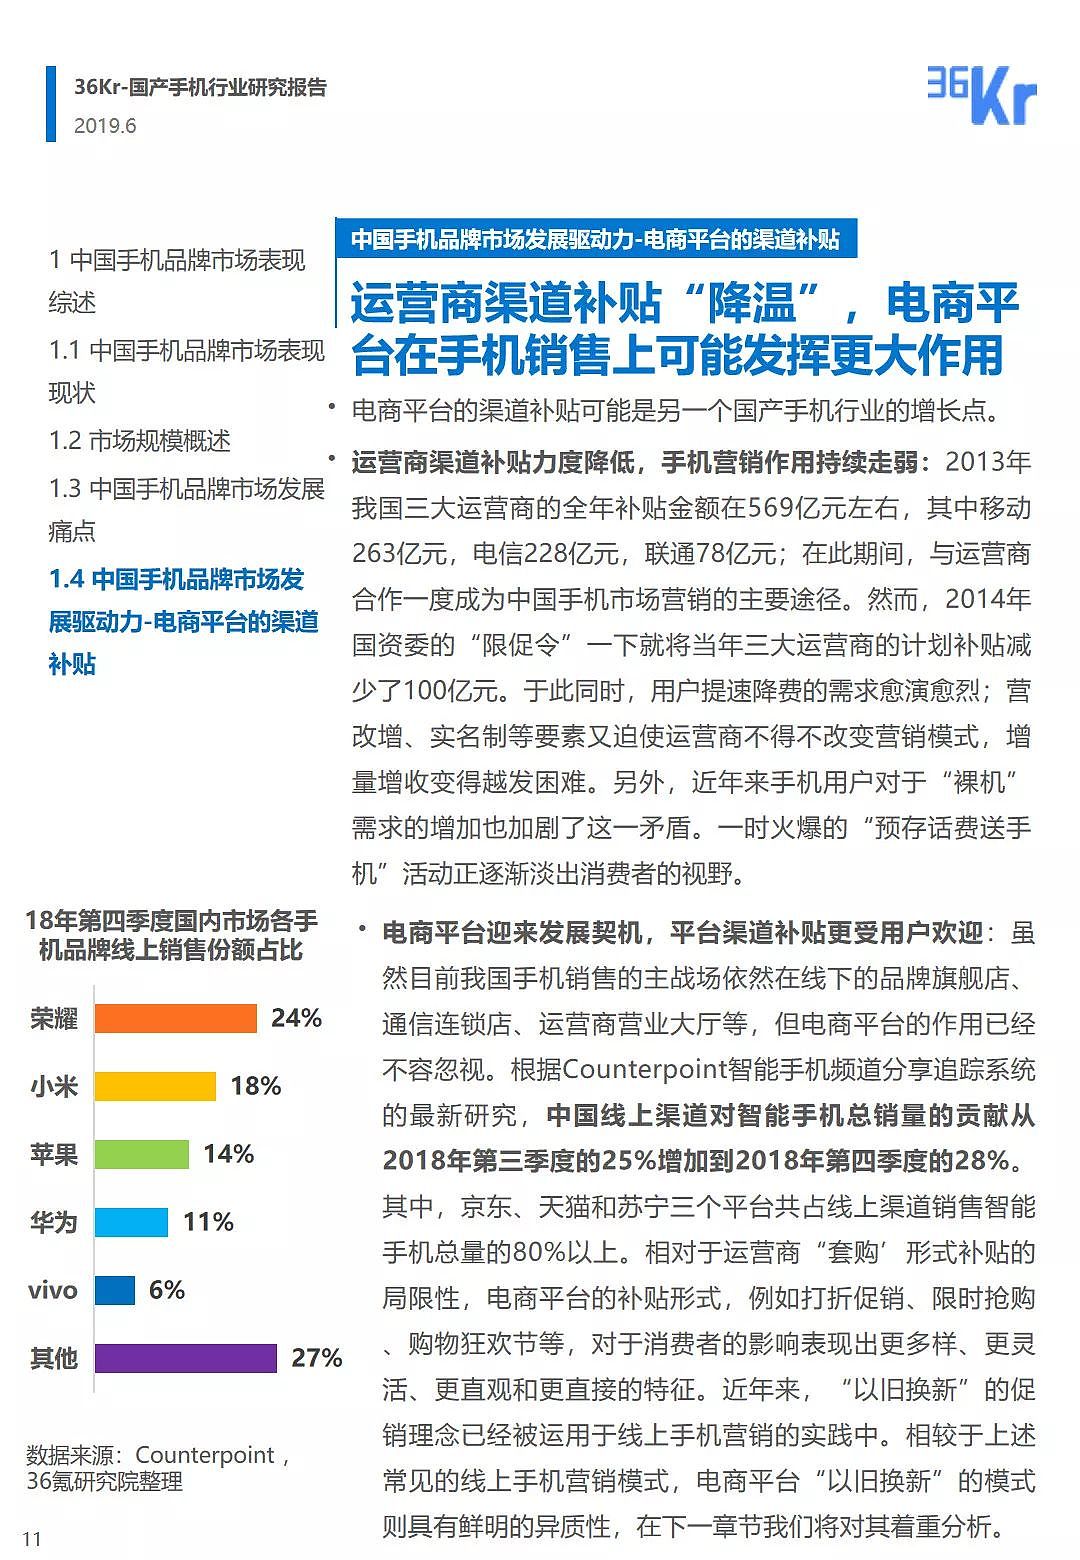 中国手机品牌市场营销研究报告 | 36氪研究 - 12